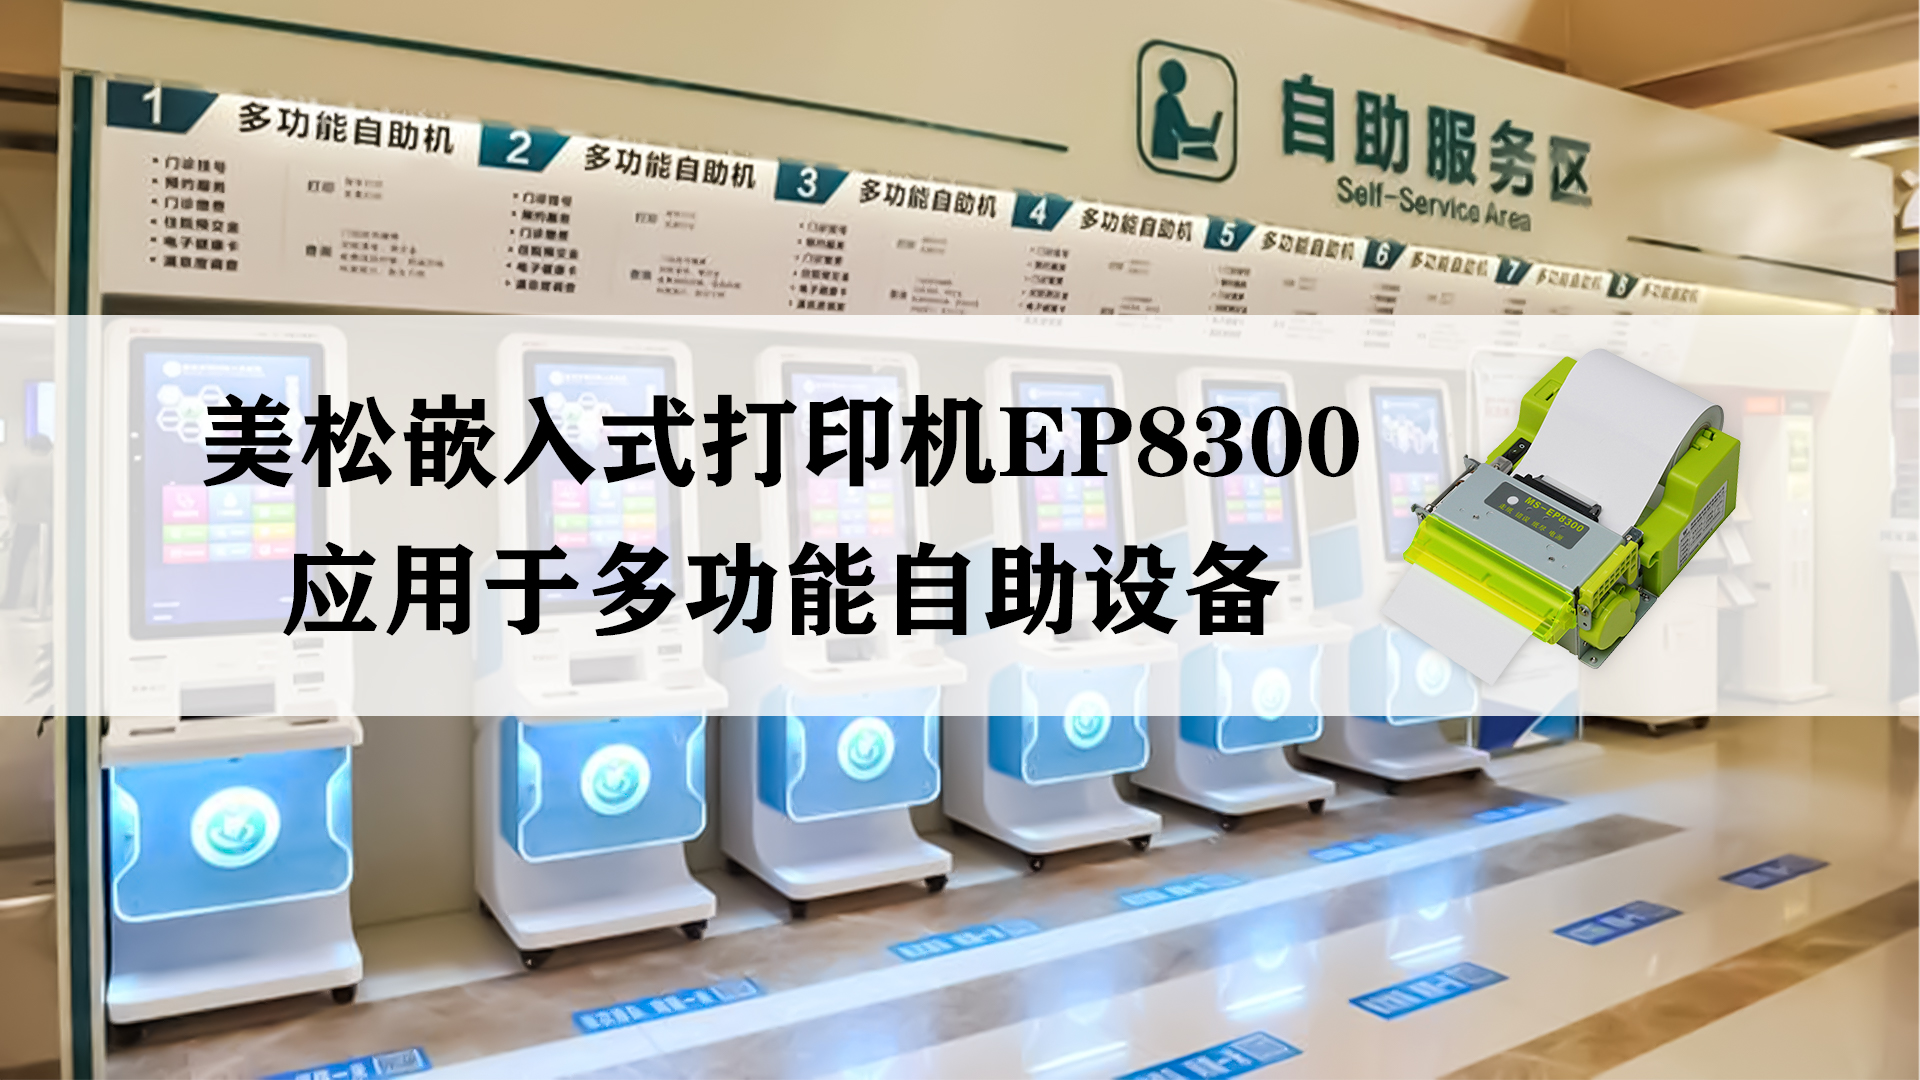 美松嵌入式打印机MS-EP8300，应用于多功能自助设备